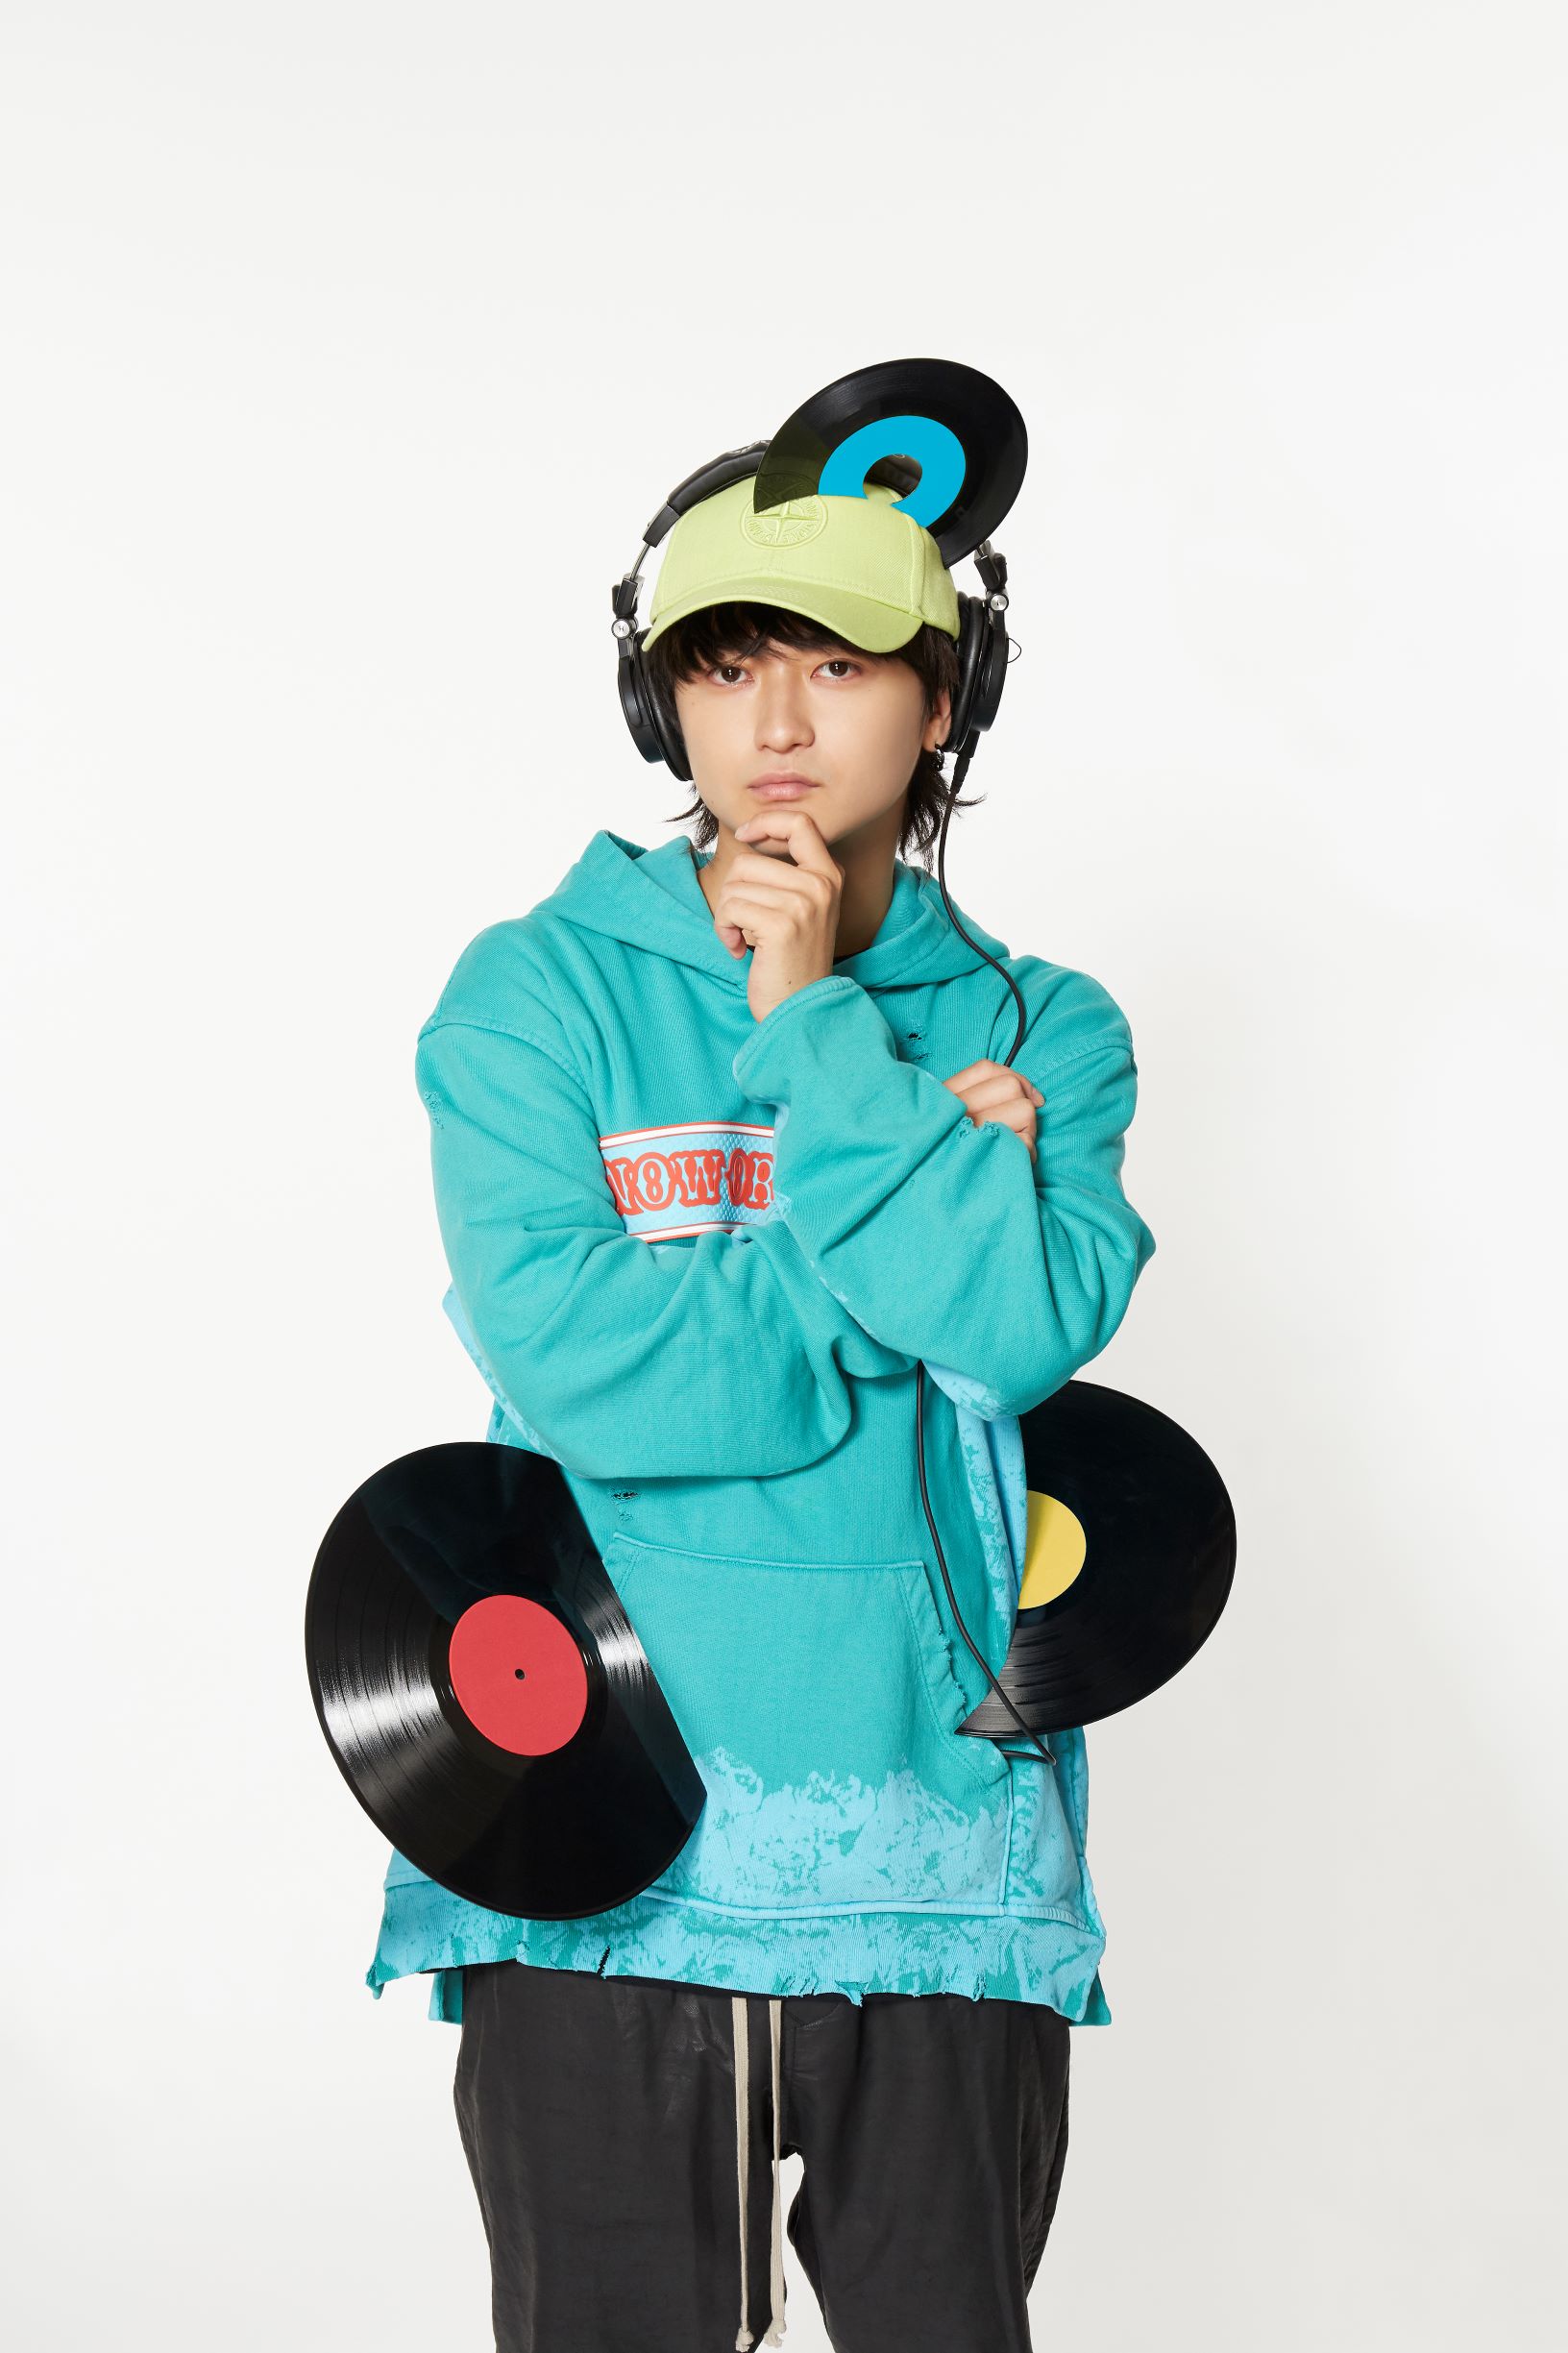 橘柊生、DJ To-i名義で2作目となるミックスCD『TOY BOX Ⅱ-All Night 